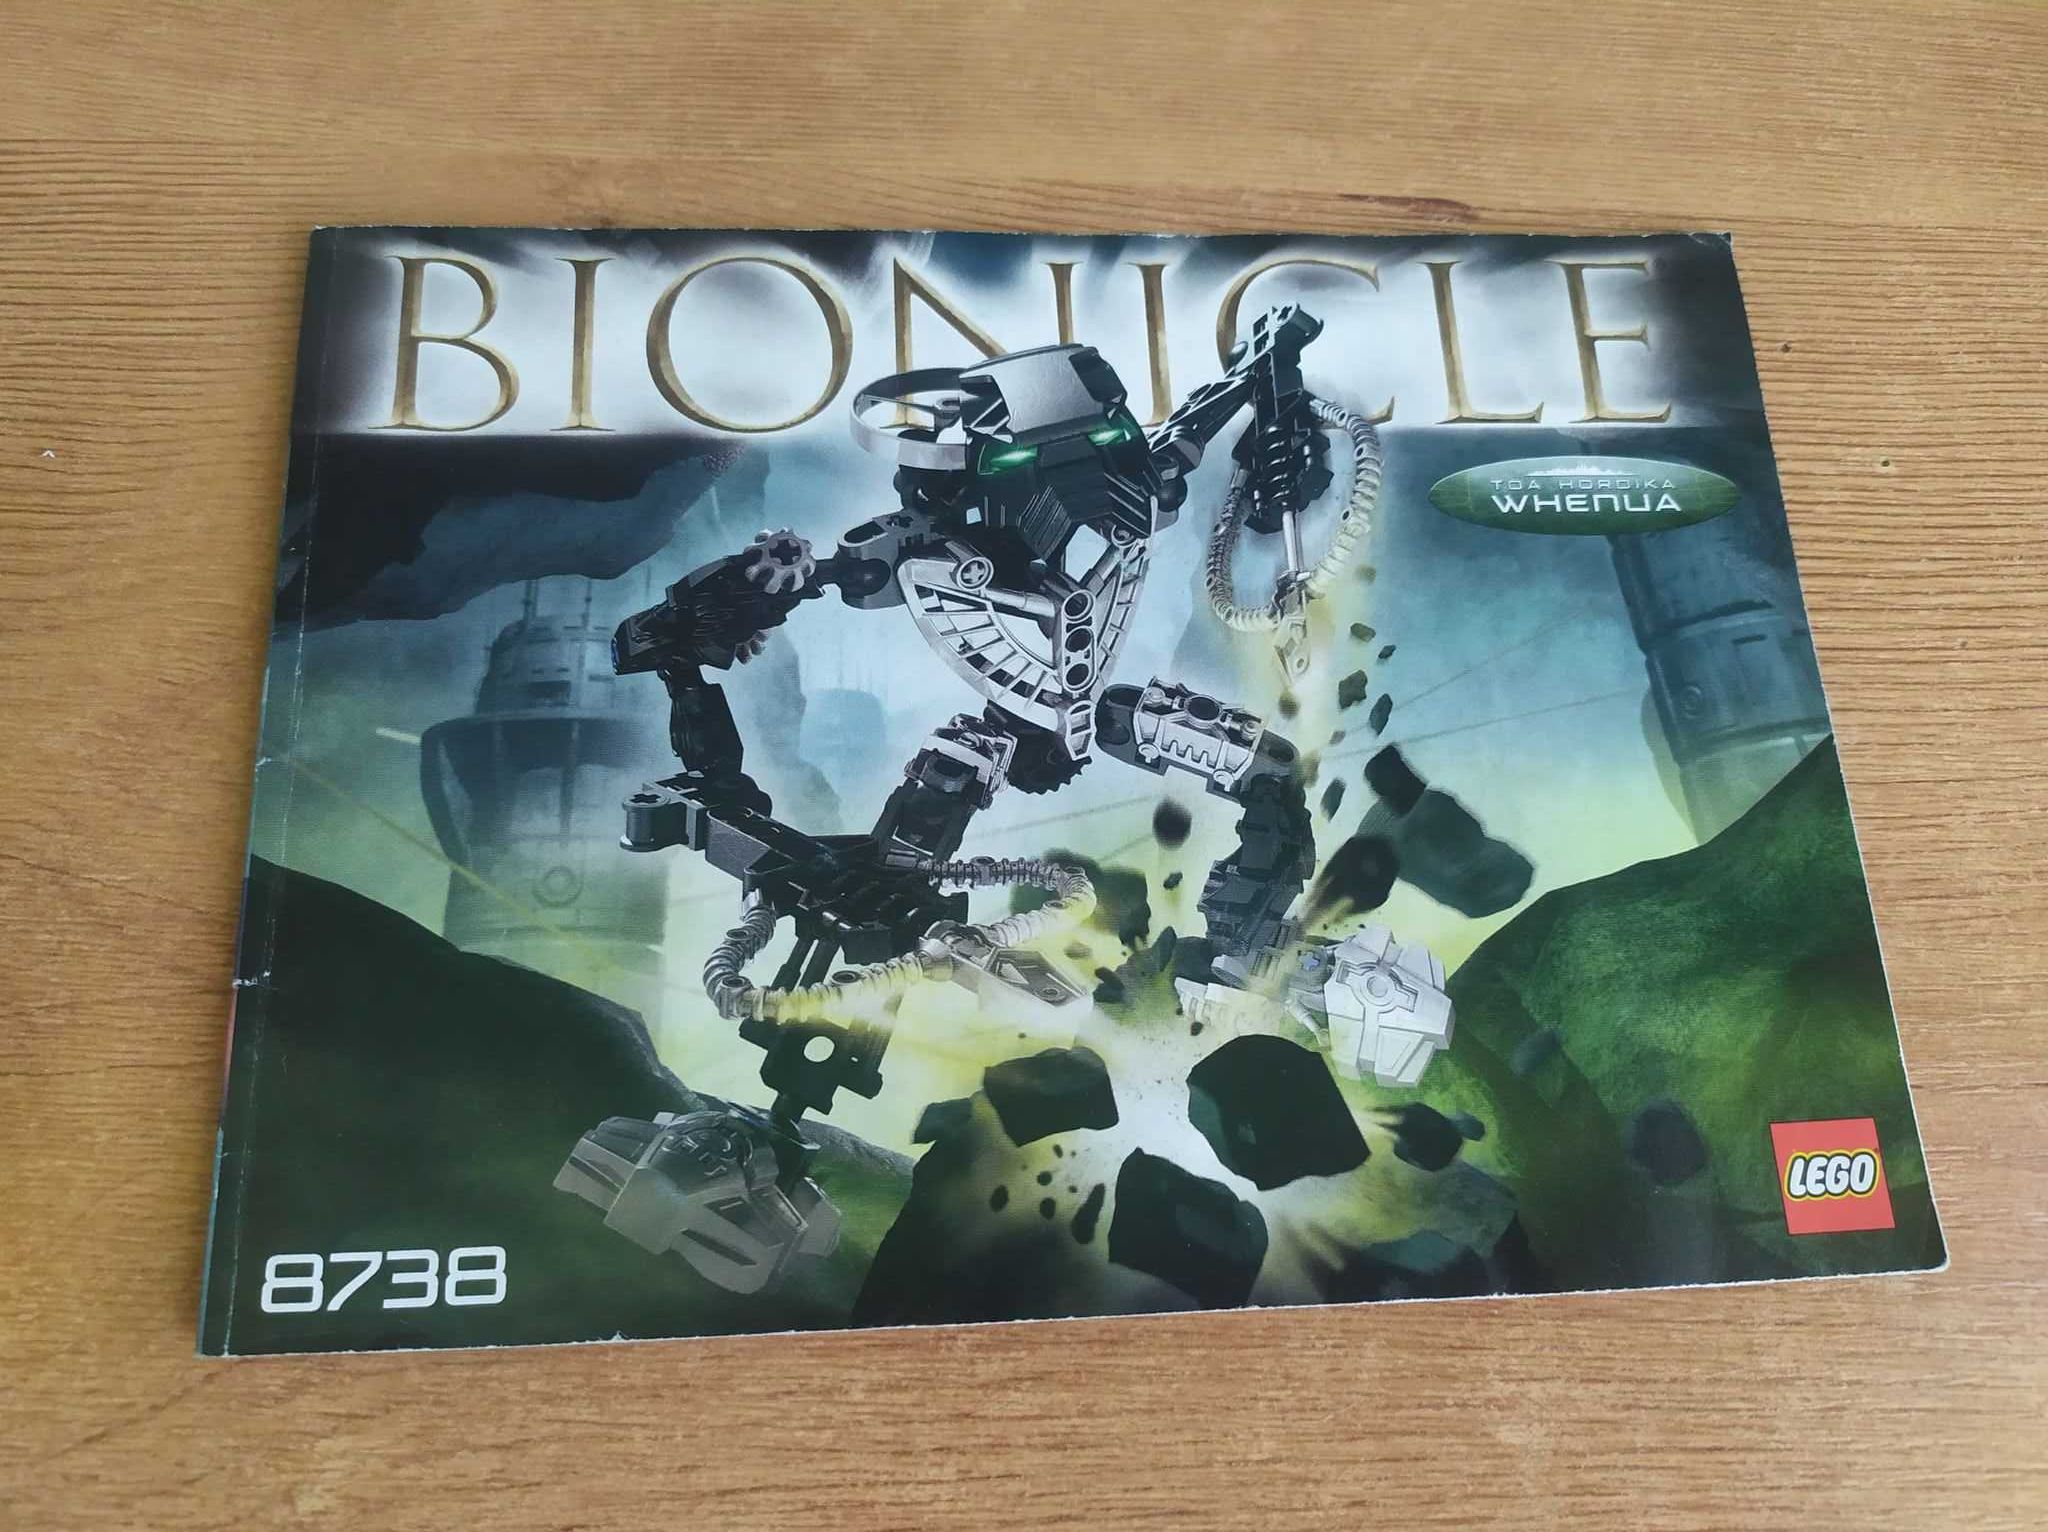 Lego Bionicle 8738 Toa Hordika Whenua instrukcja